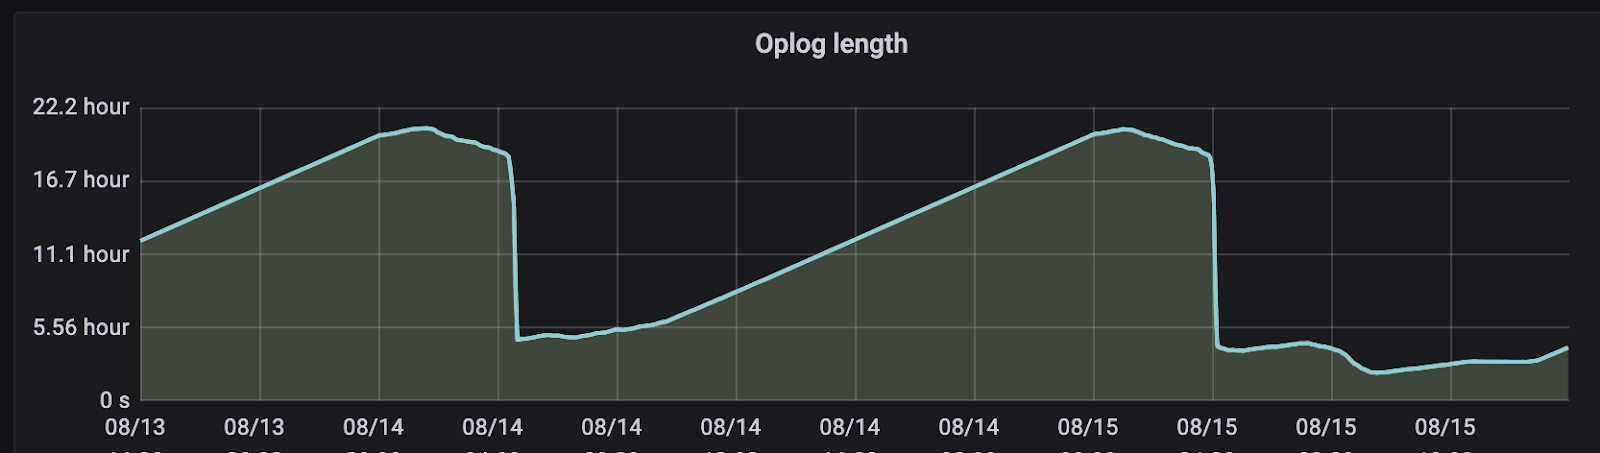 Oplog иногда превышал 20 часов — из-за этого репликация не успевала за новыми данными, и реплика развалилась